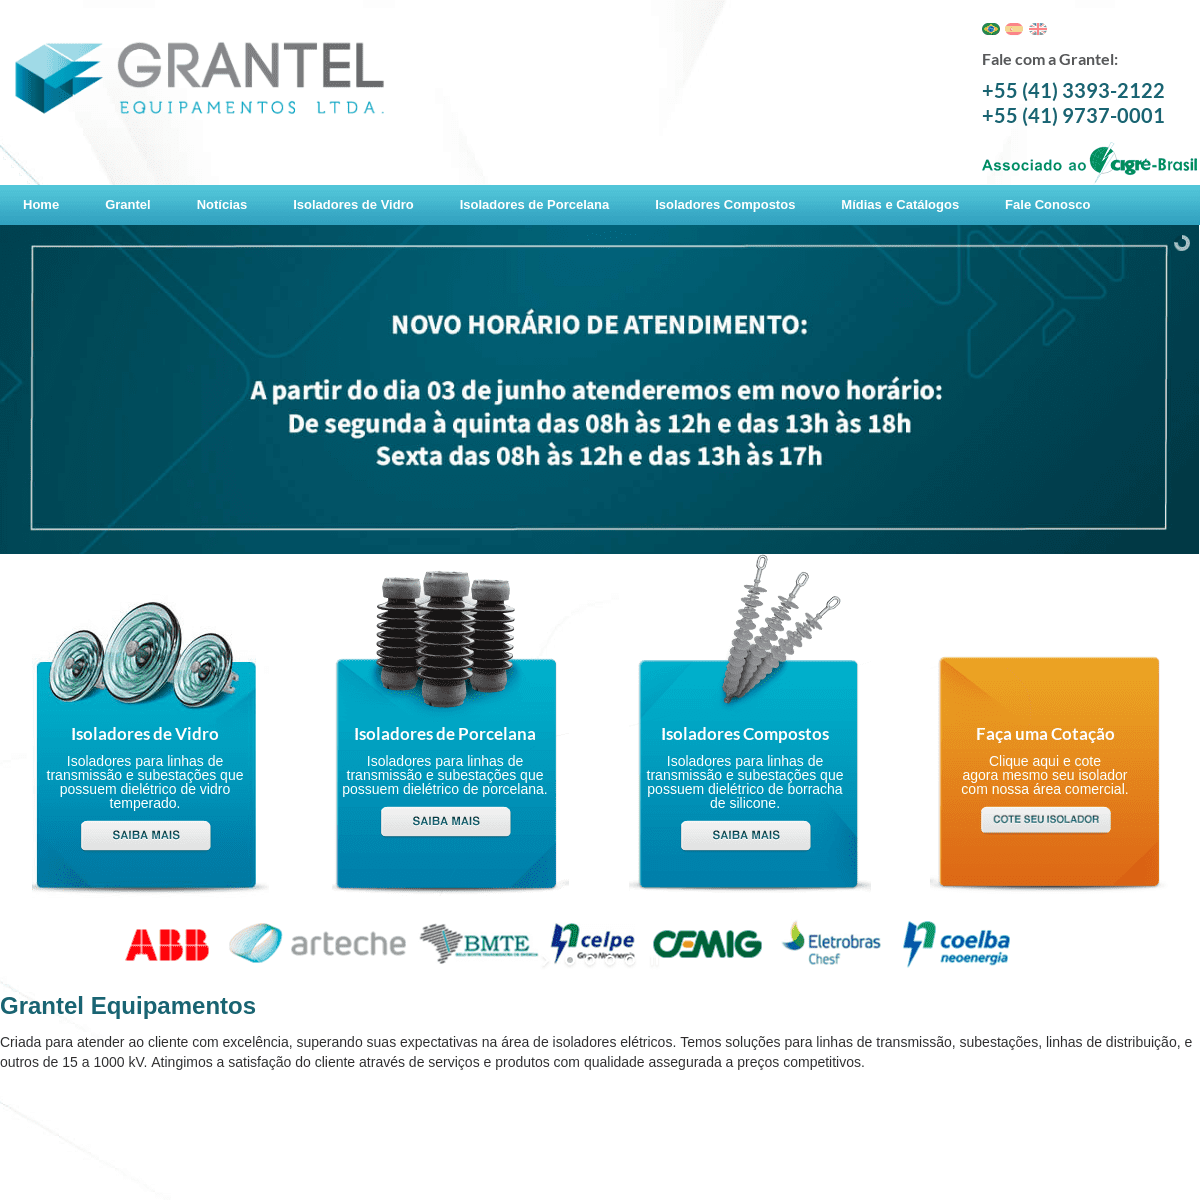 A complete backup of grantelequipamentos.com.br